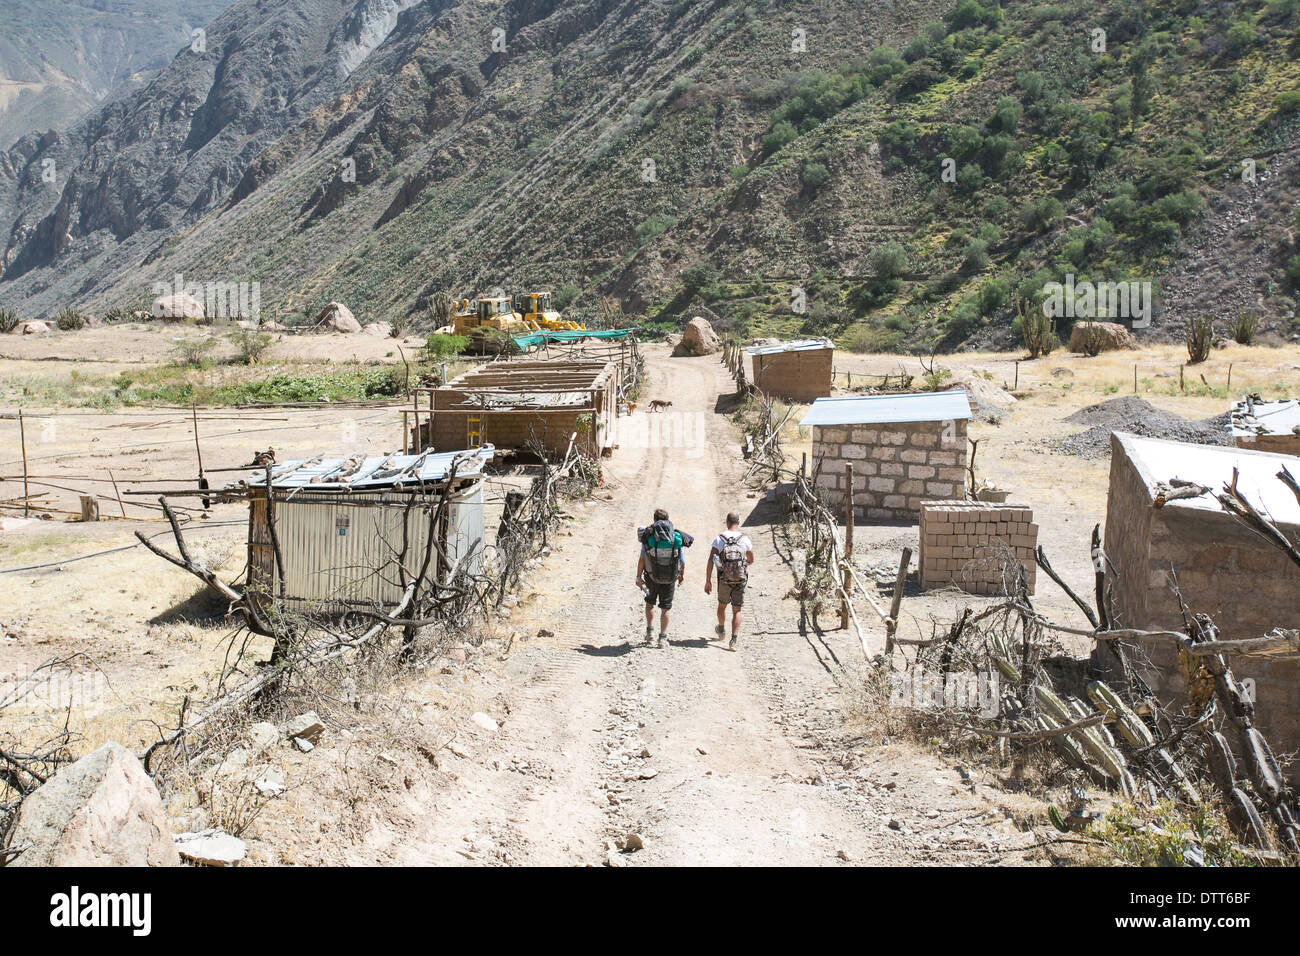 Trekking dentro del cañón de Colca en Perú, Cabanaconde, día seco de polvo y arena , 2 personas caminando en una aldea fantasma , Perú Foto de stock